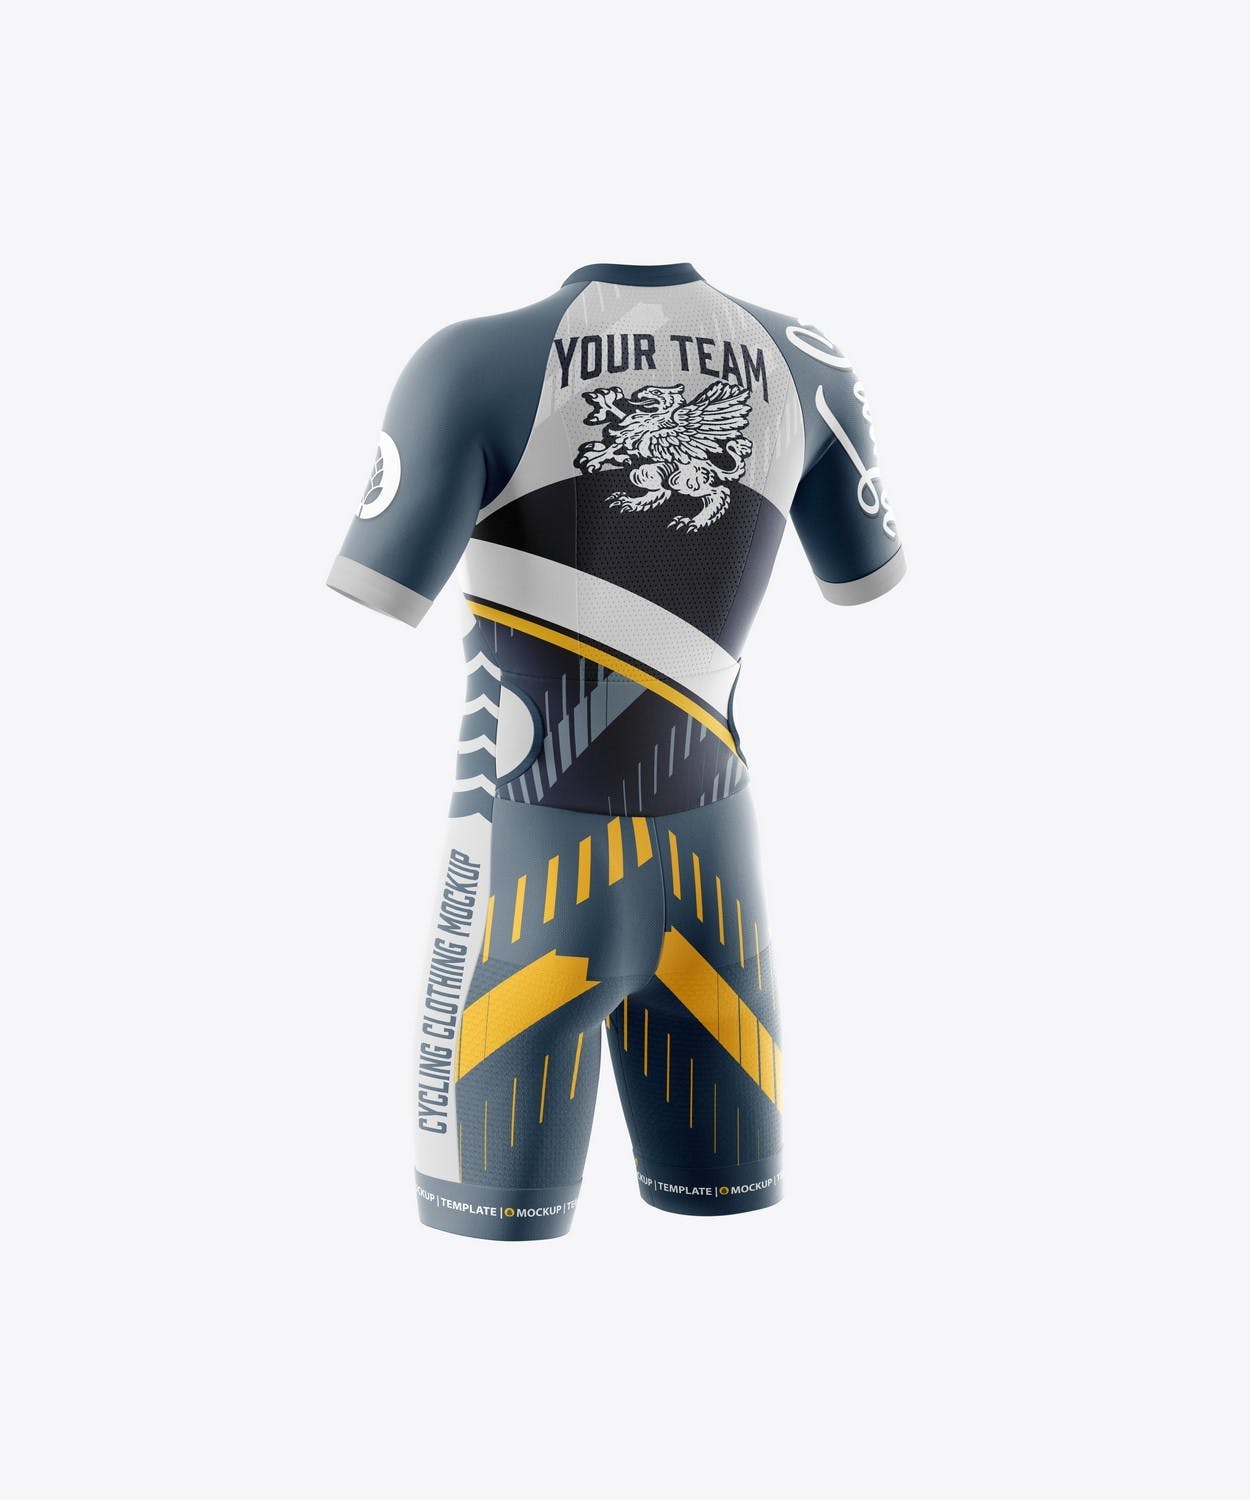 男子运动套装自行车服装品牌设计样机 Sport Cycling Suit for Men Mockup 样机素材 第6张